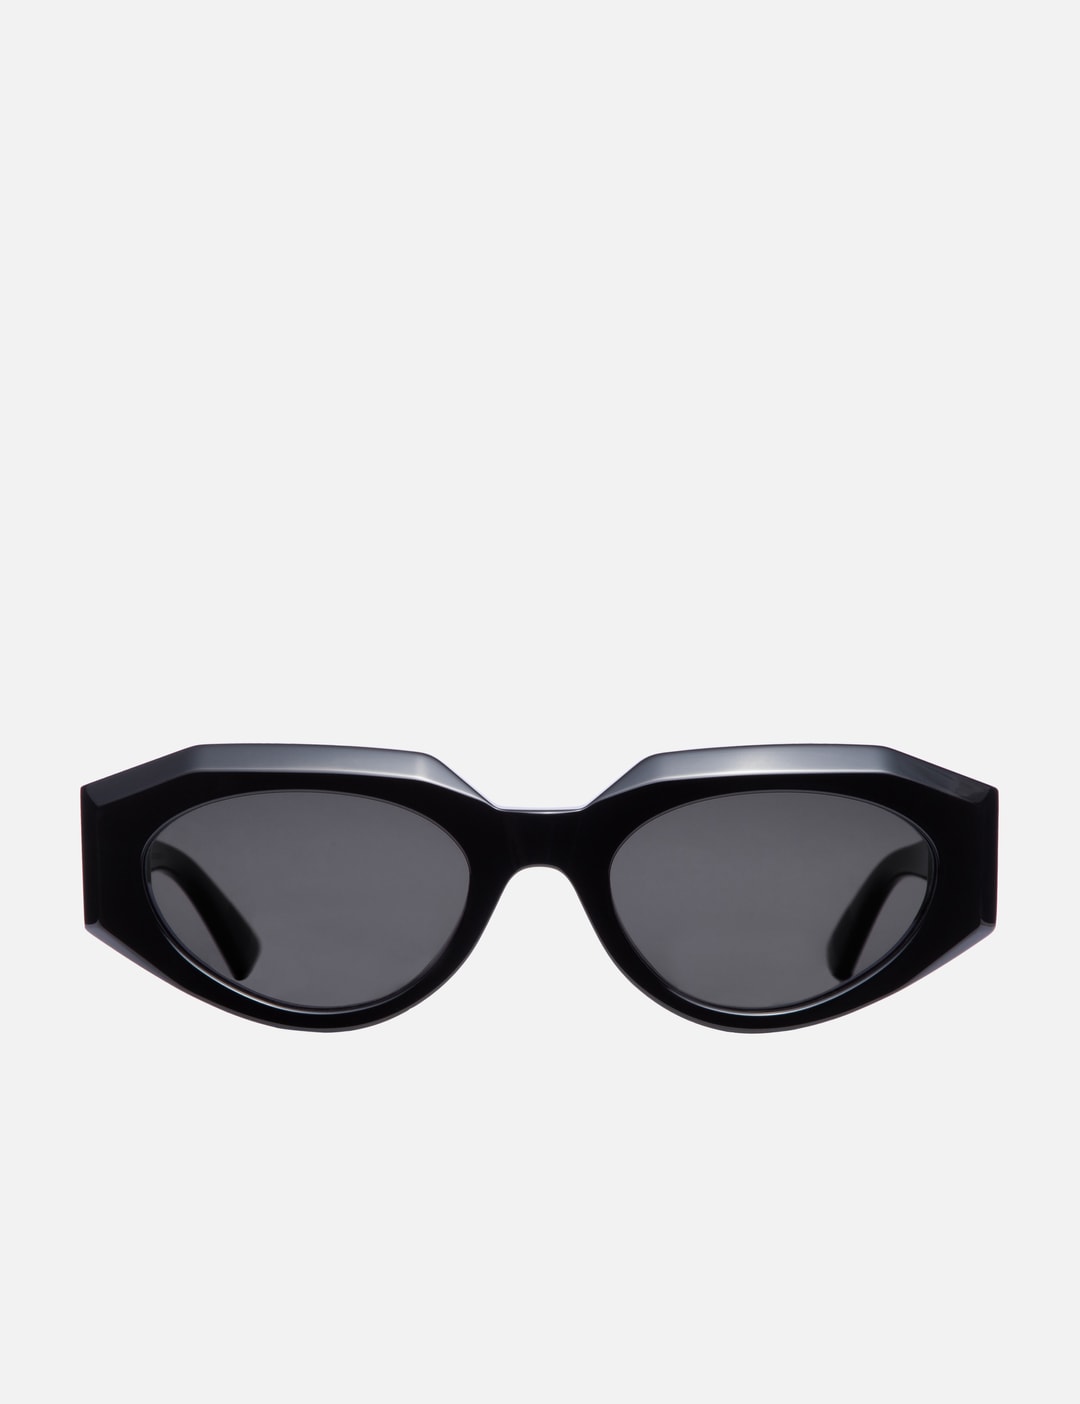 Louis Vuitton LV Link Square Sunglasses Black Acetate. Size W